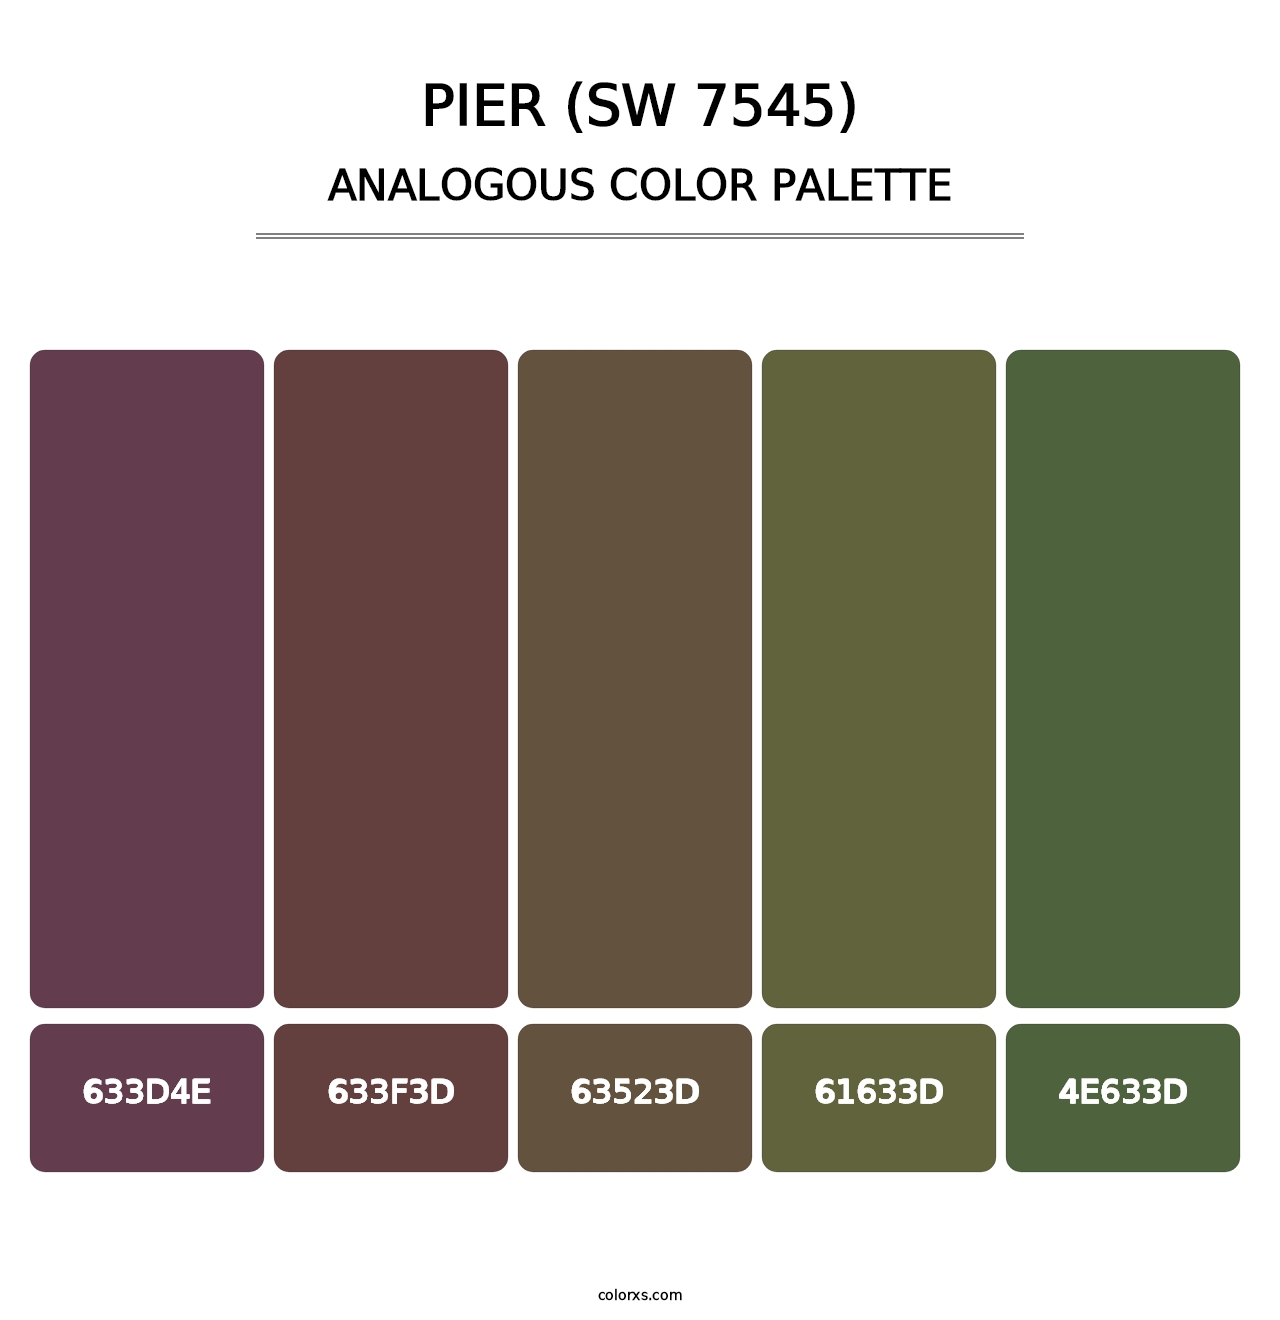 Pier (SW 7545) - Analogous Color Palette